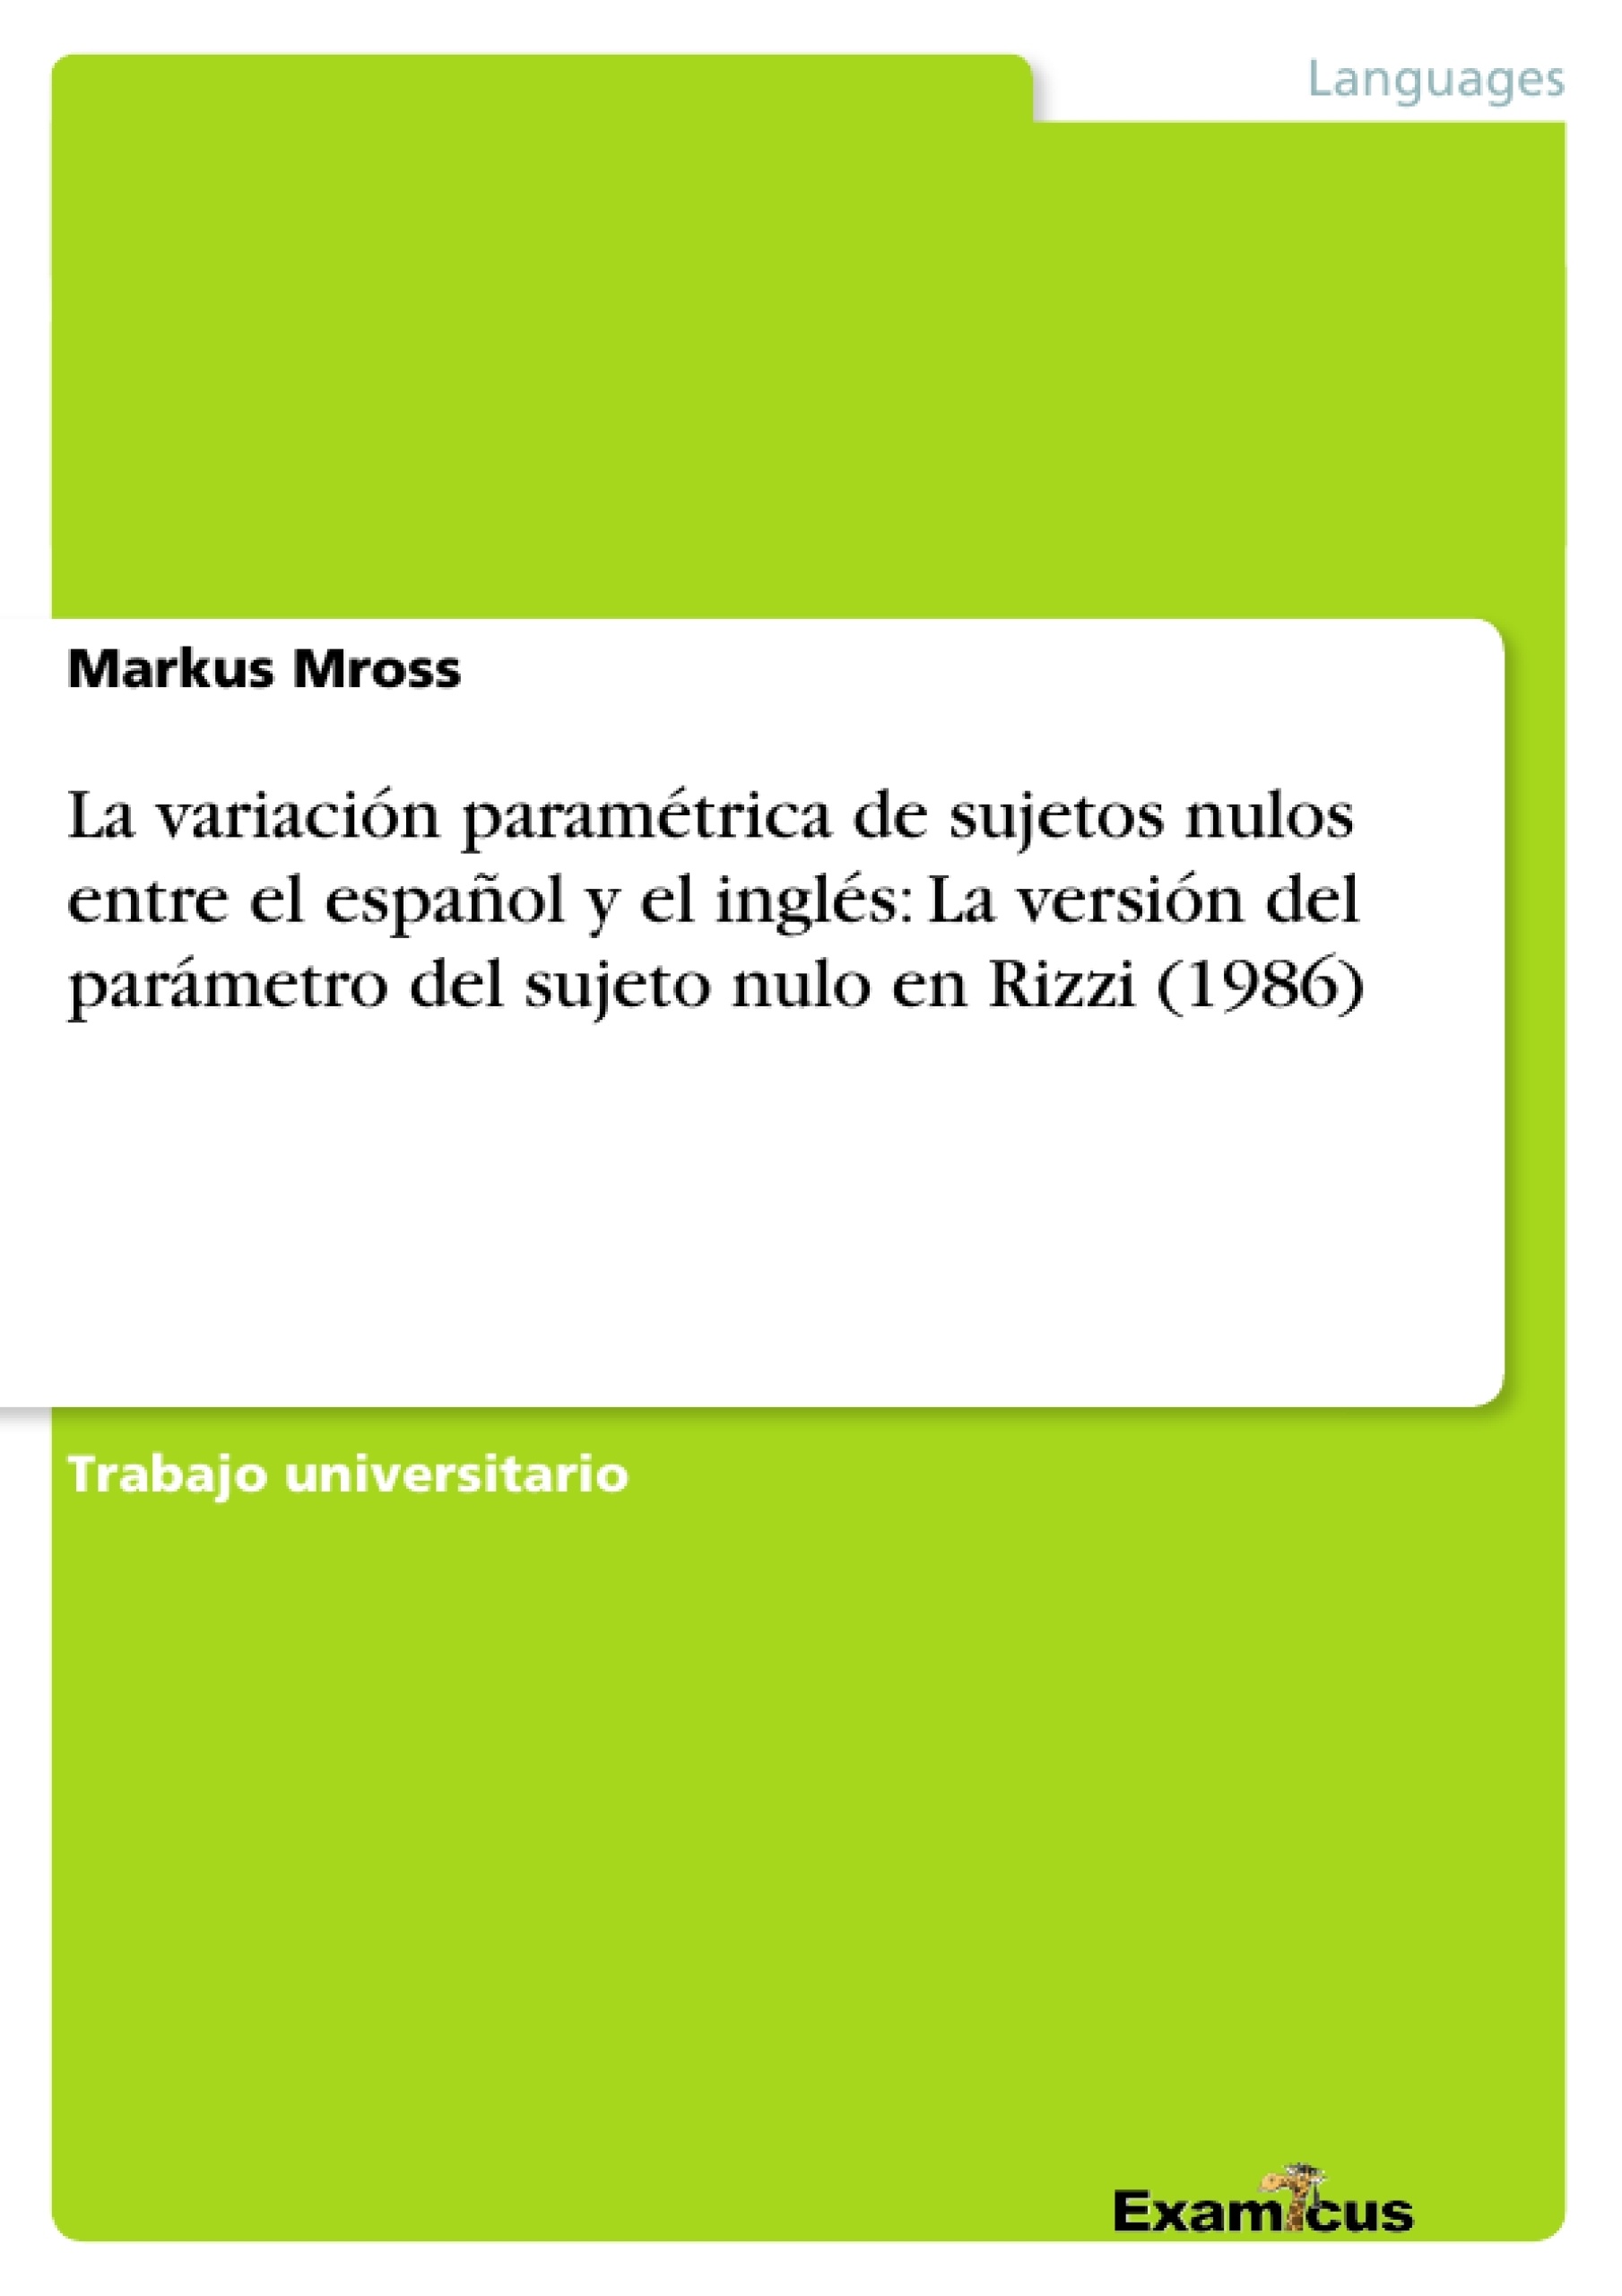 Título: La variación paramétrica de sujetos nulos entre el español y el inglés: La versión del parámetro del sujeto nulo en Rizzi (1986)